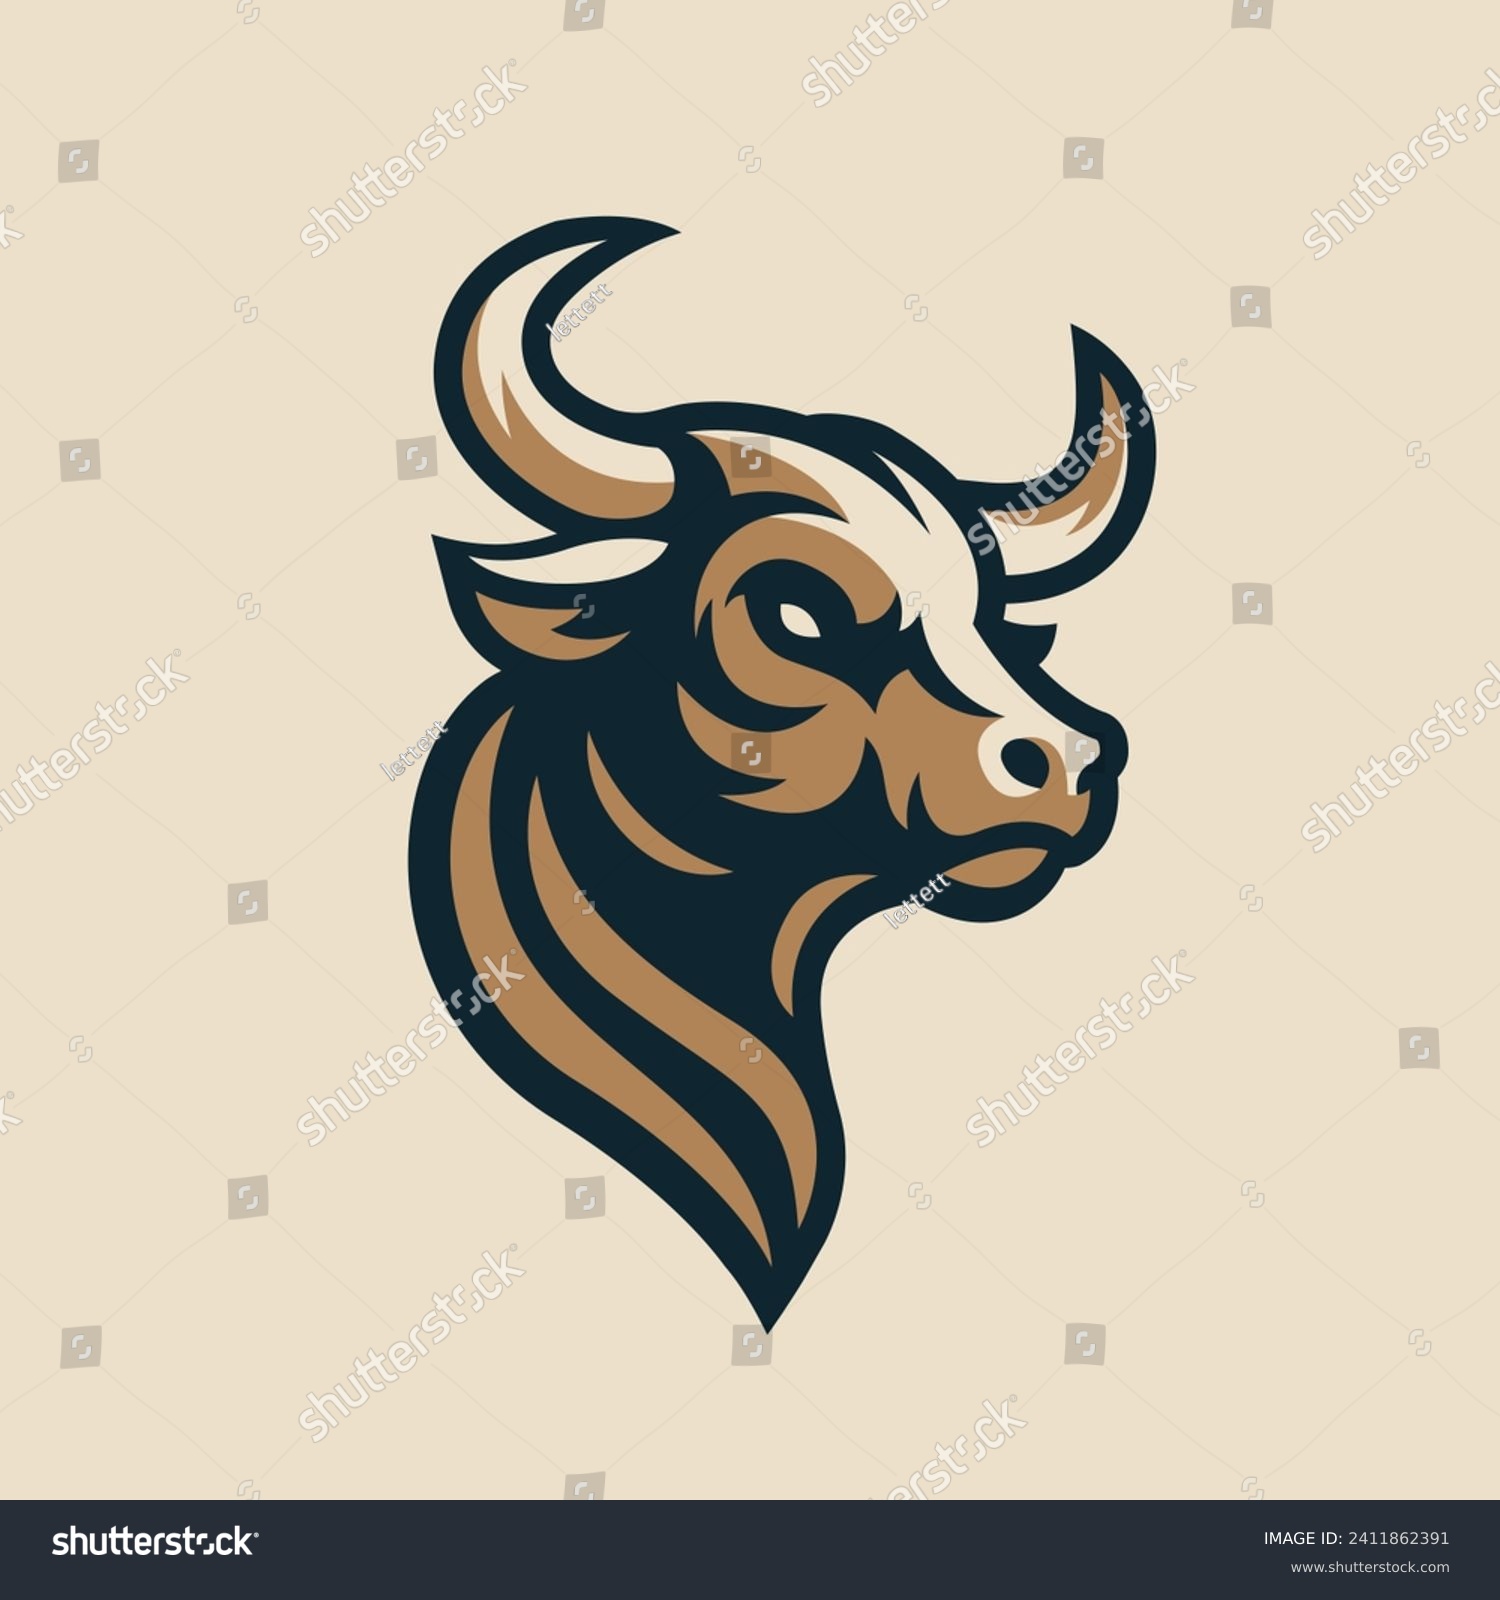 SVG of Bull head logo design. Creative bull horns symbol. Vector illustration.  svg